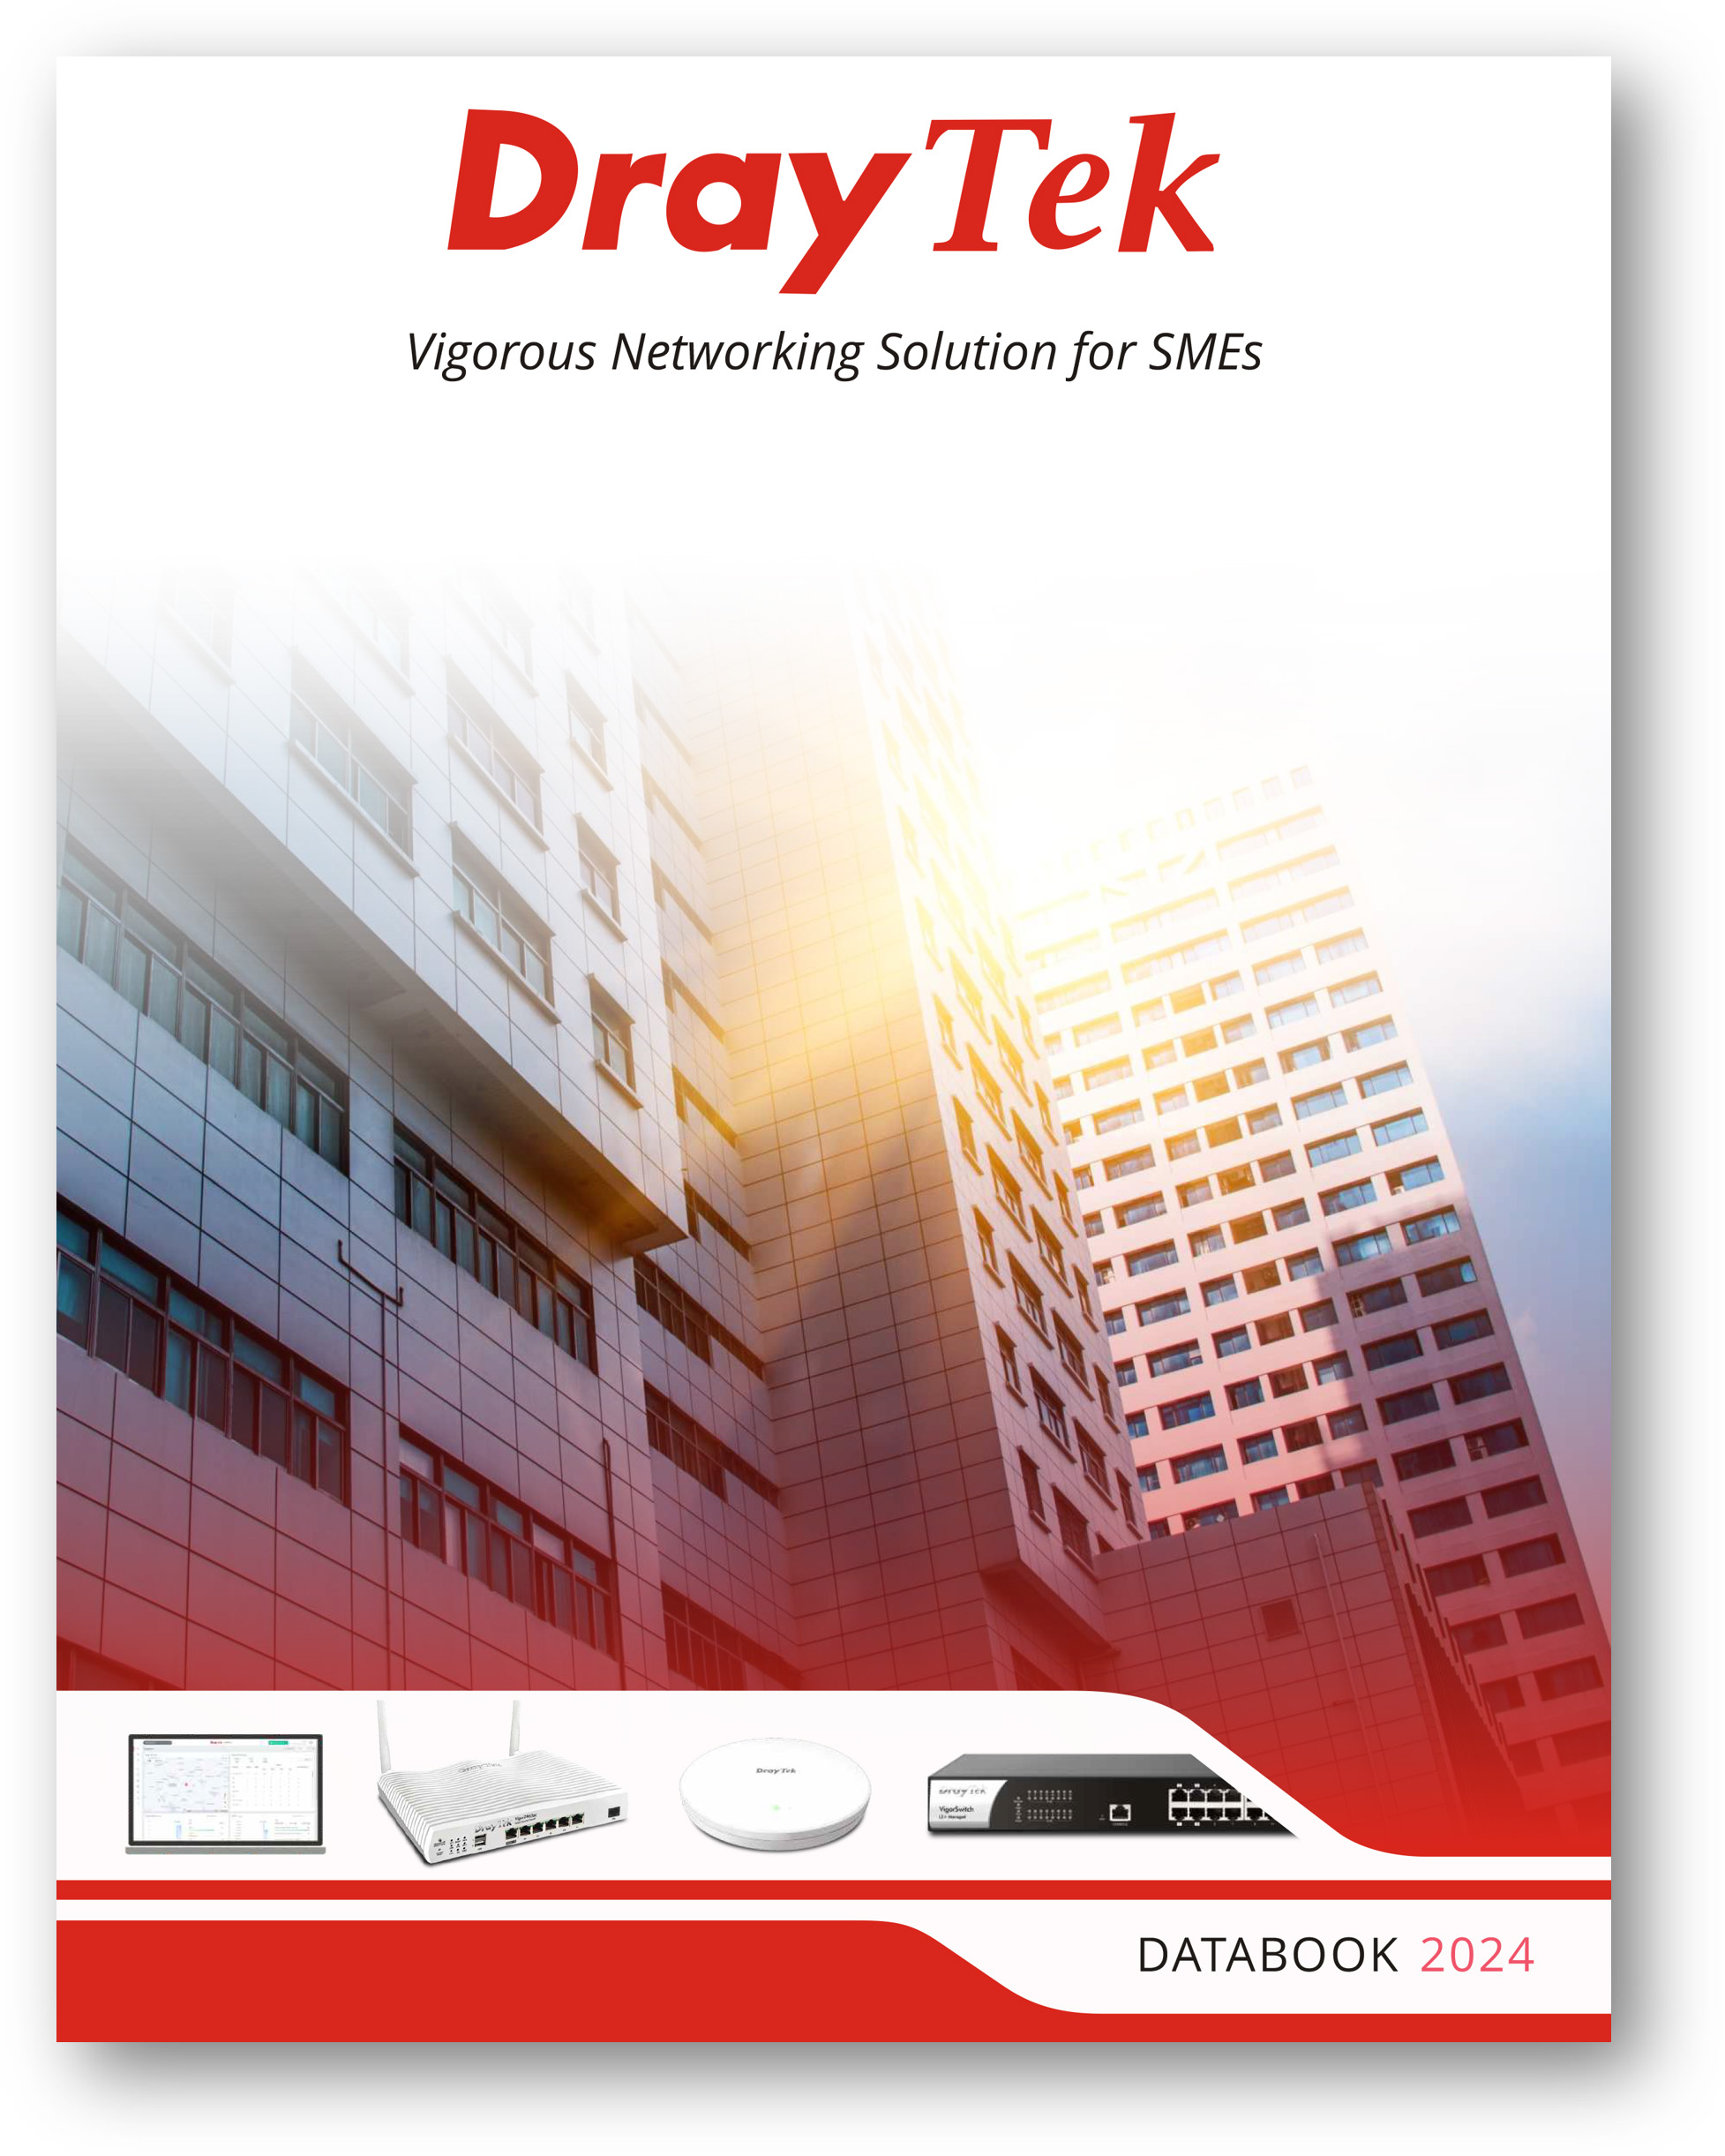 DrayTek Product Databook 2024